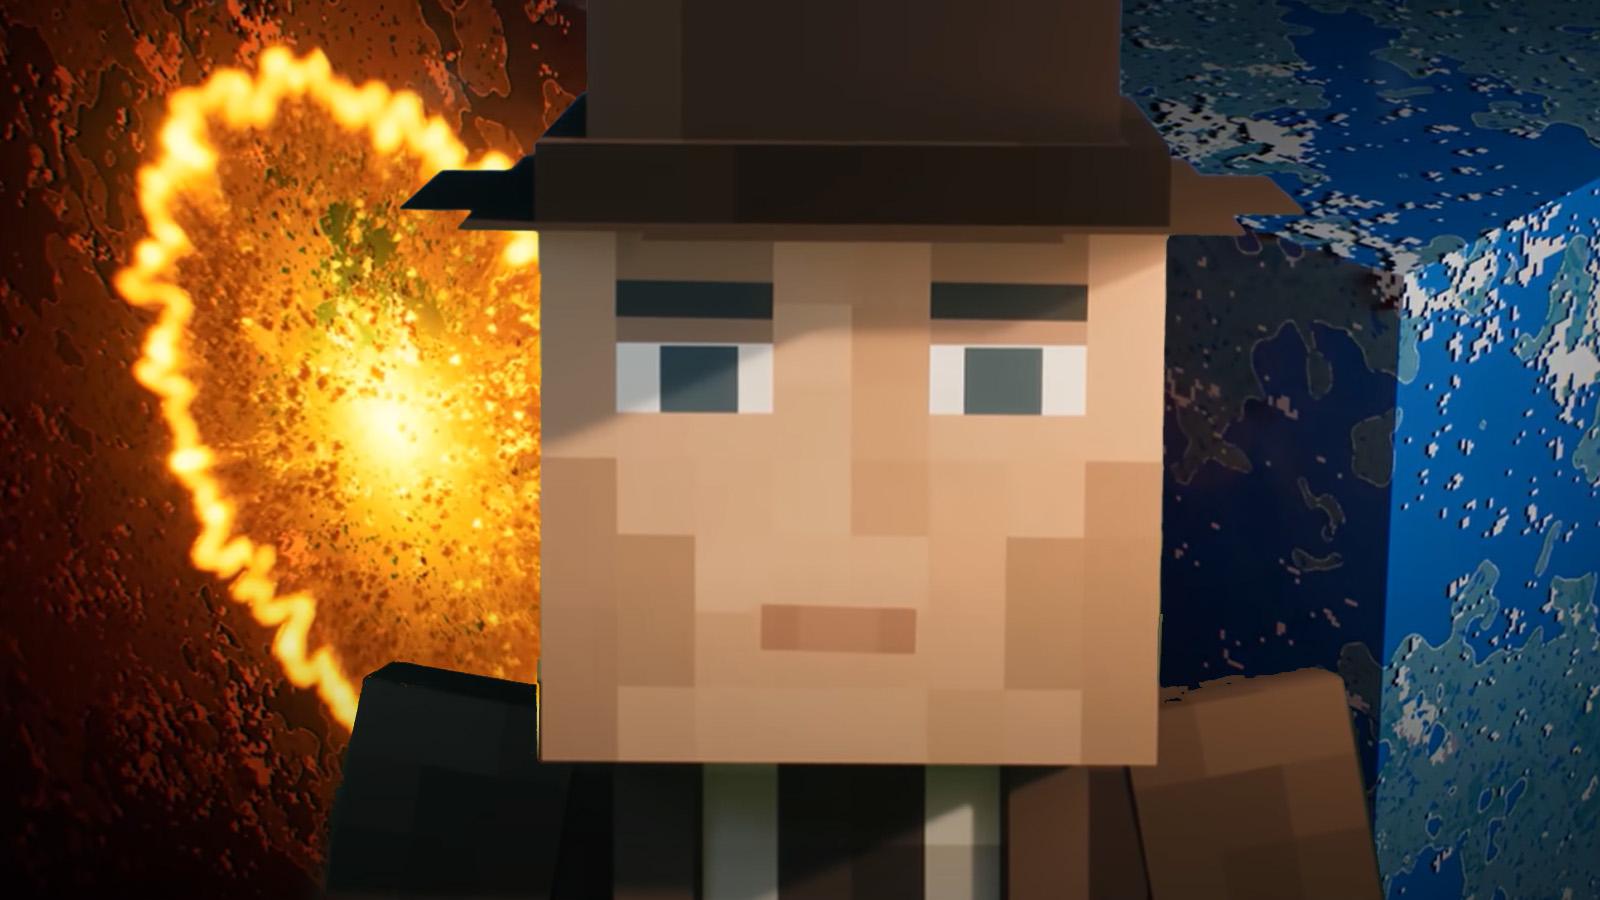 YouTuber recreates Oppenheimer’s ending in Minecraft